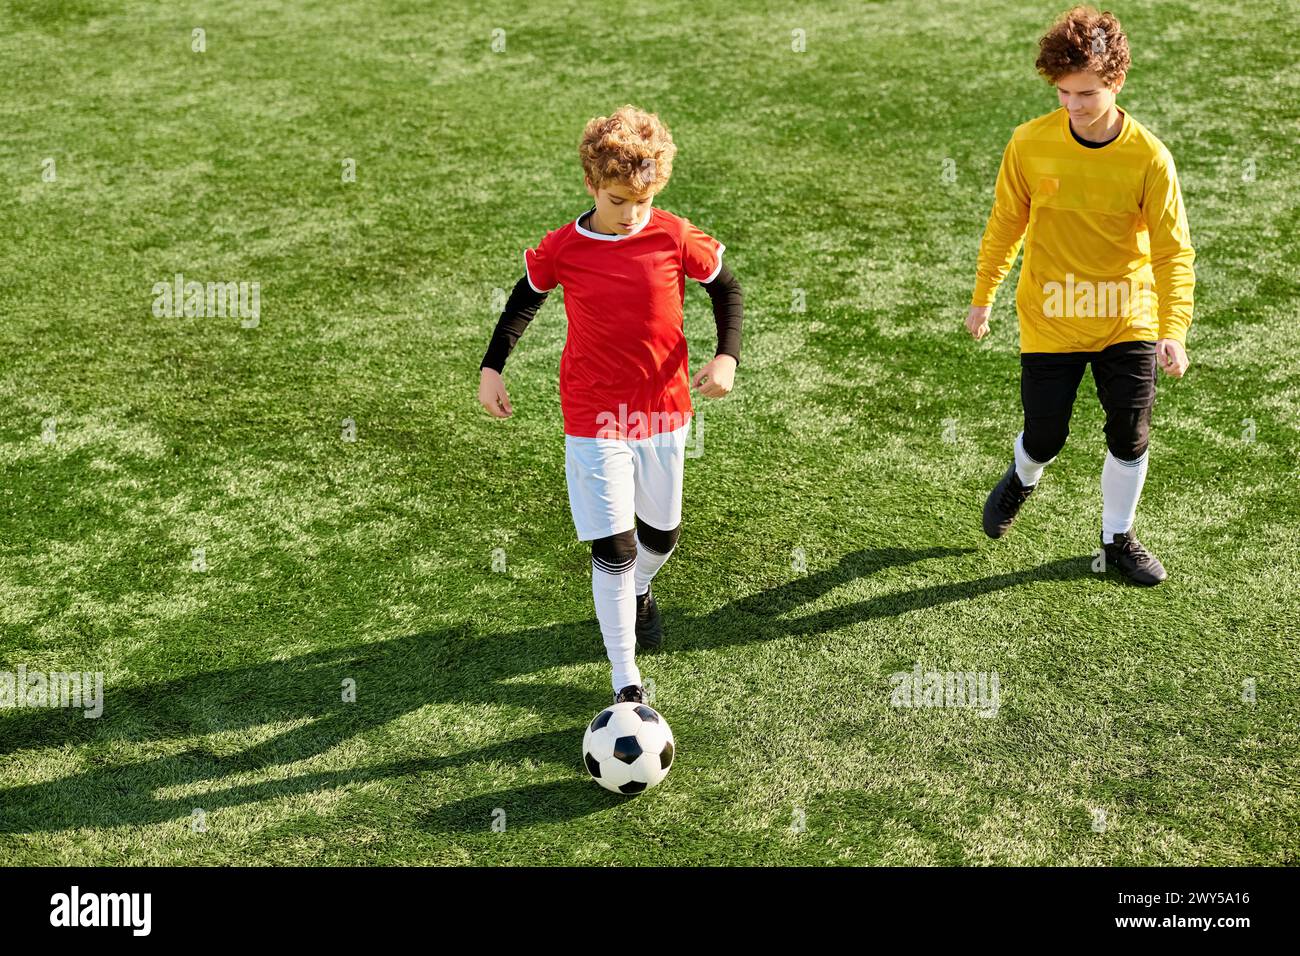 Deux jeunes hommes se sont engagés dans un jeu dynamique de football, courir, frapper et passer le ballon avec habileté et passion sur un terrain herbeux. Banque D'Images